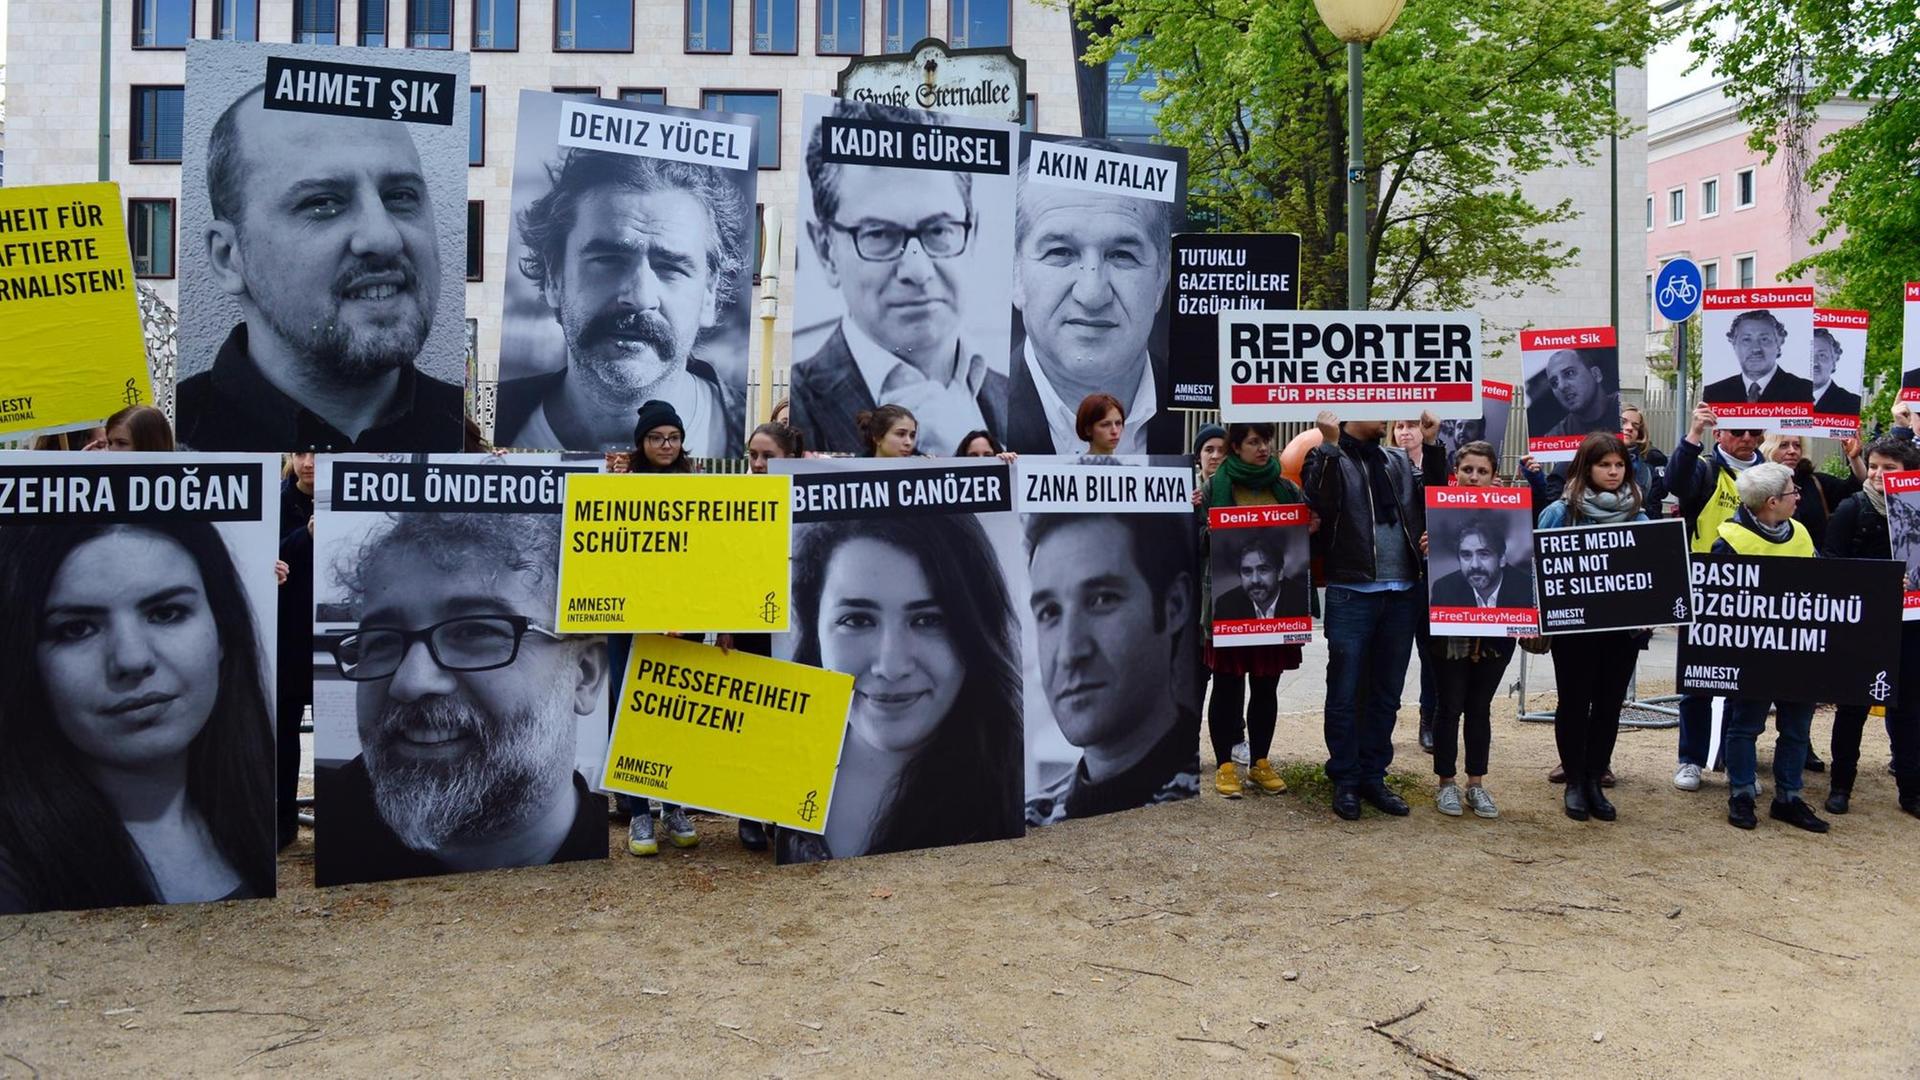 Demonstranten protestieren vor der Botschaft der Türkei in Berlin bei einer Aktion von Amnesty International und Reporter ohne Grenzen für Presse- und Meinungsfreiheit in der Türkei.